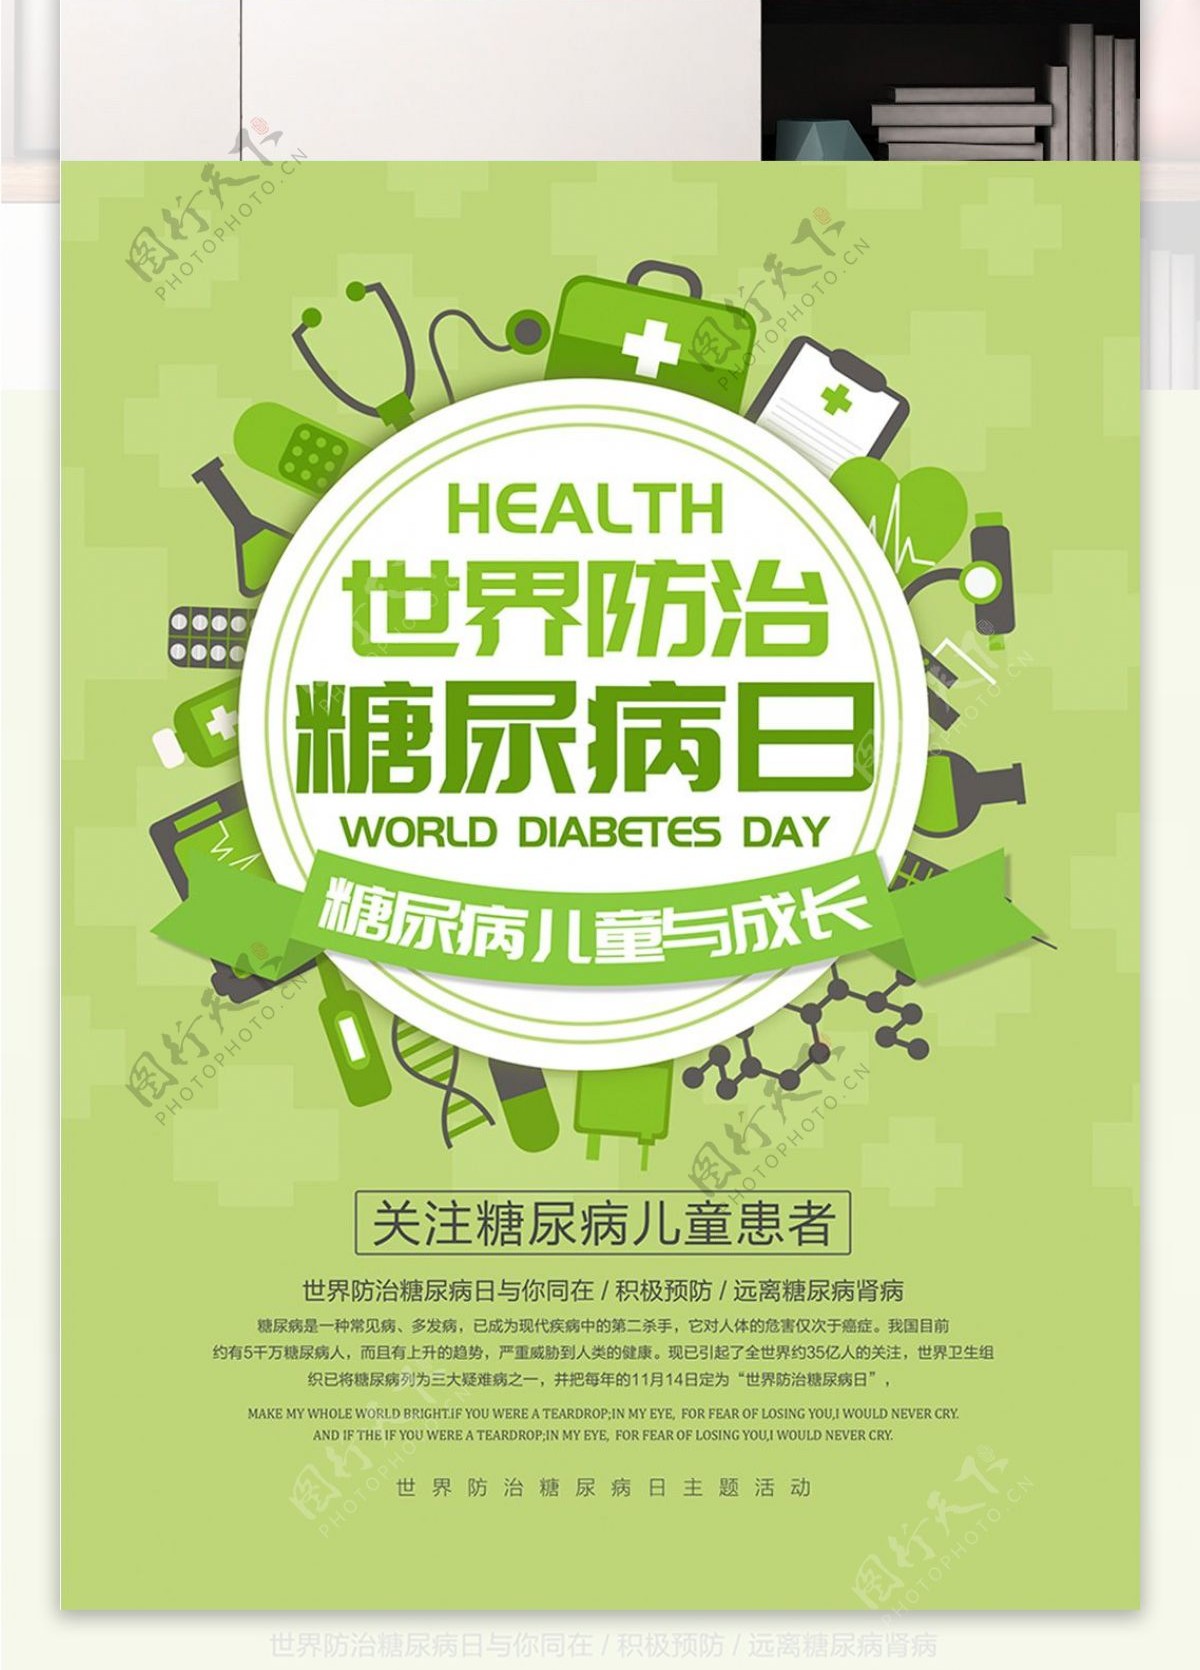 清新绿色世界防治糖尿病日医疗公益宣传海报